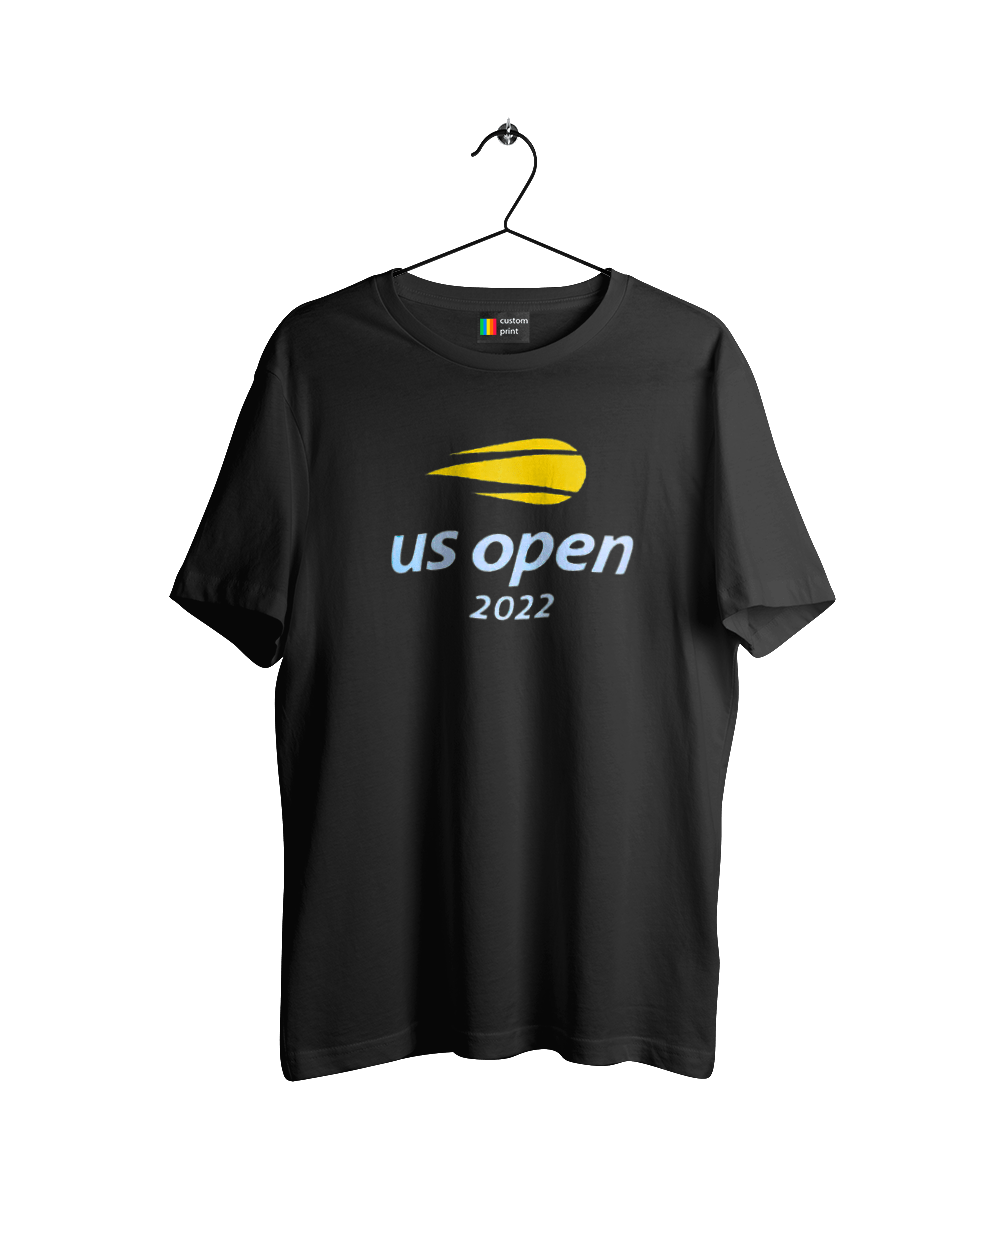 Тенісний турнір US Open 2022